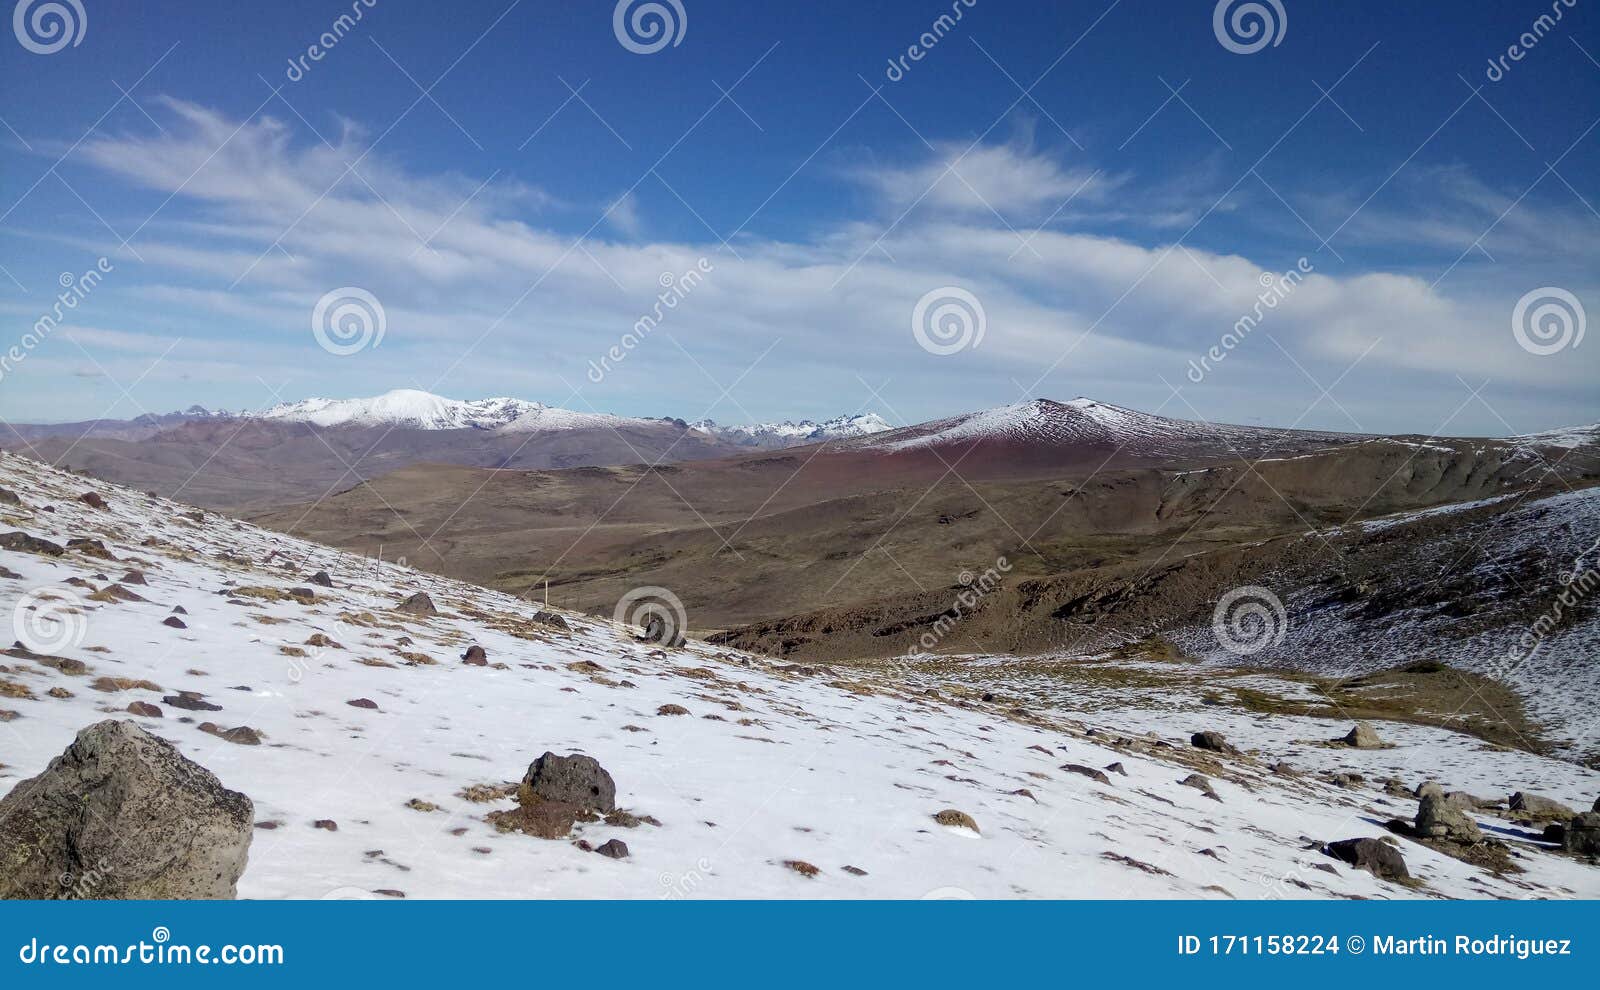 snow in the desert - neuquen, argentina